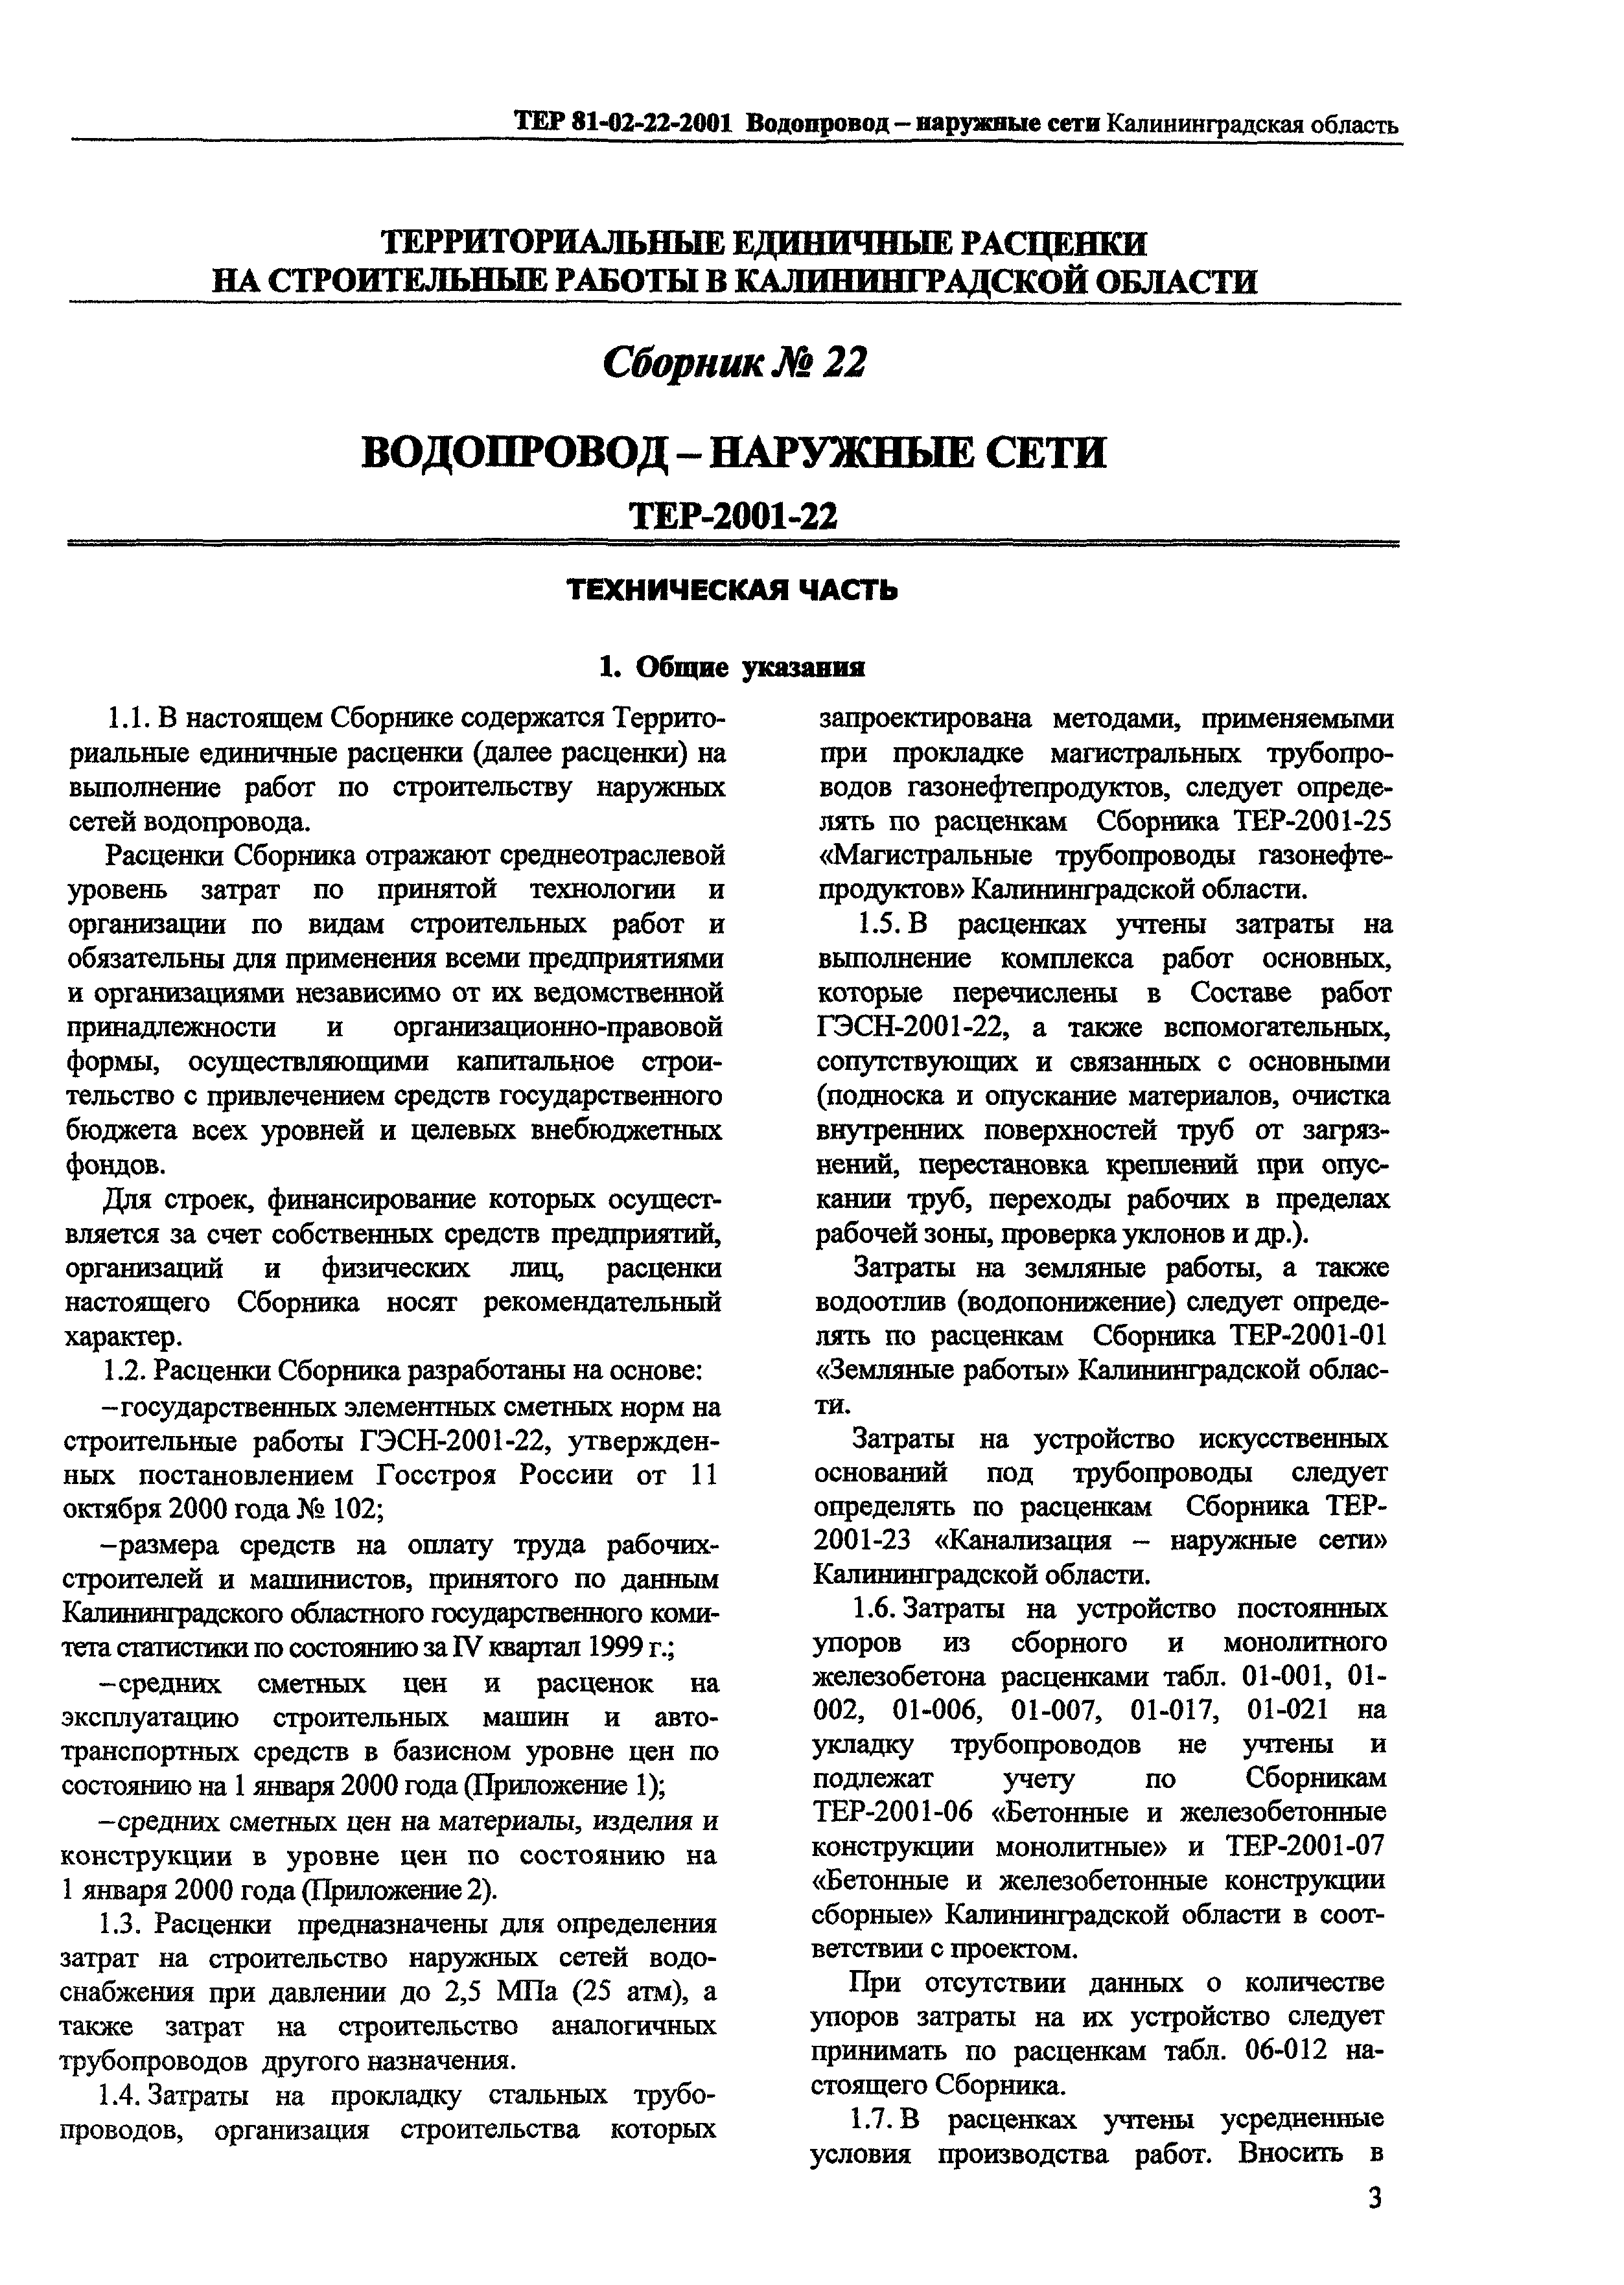 ТЕР Калининградской области 2001-22